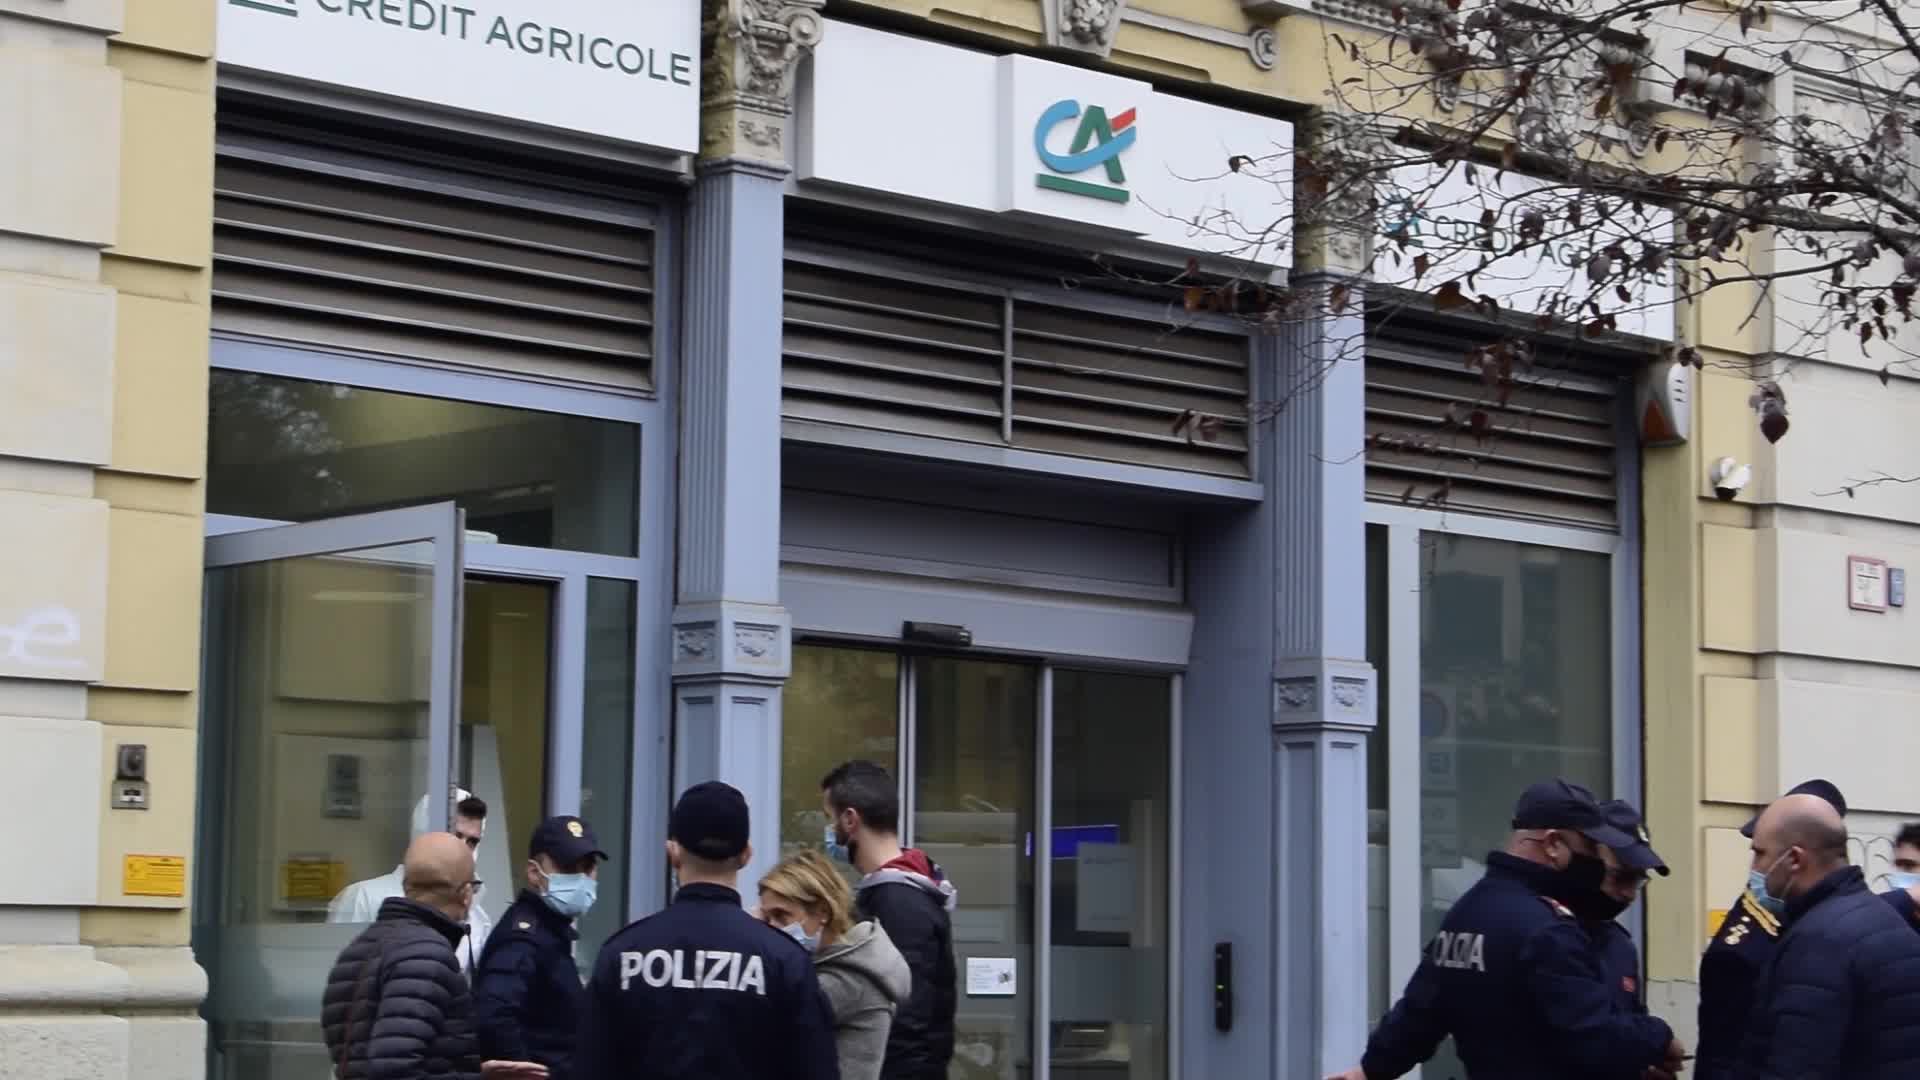 Milano, rapina in banca, il direttore: "Banditi scappati dai tombini, ostaggi indenni"